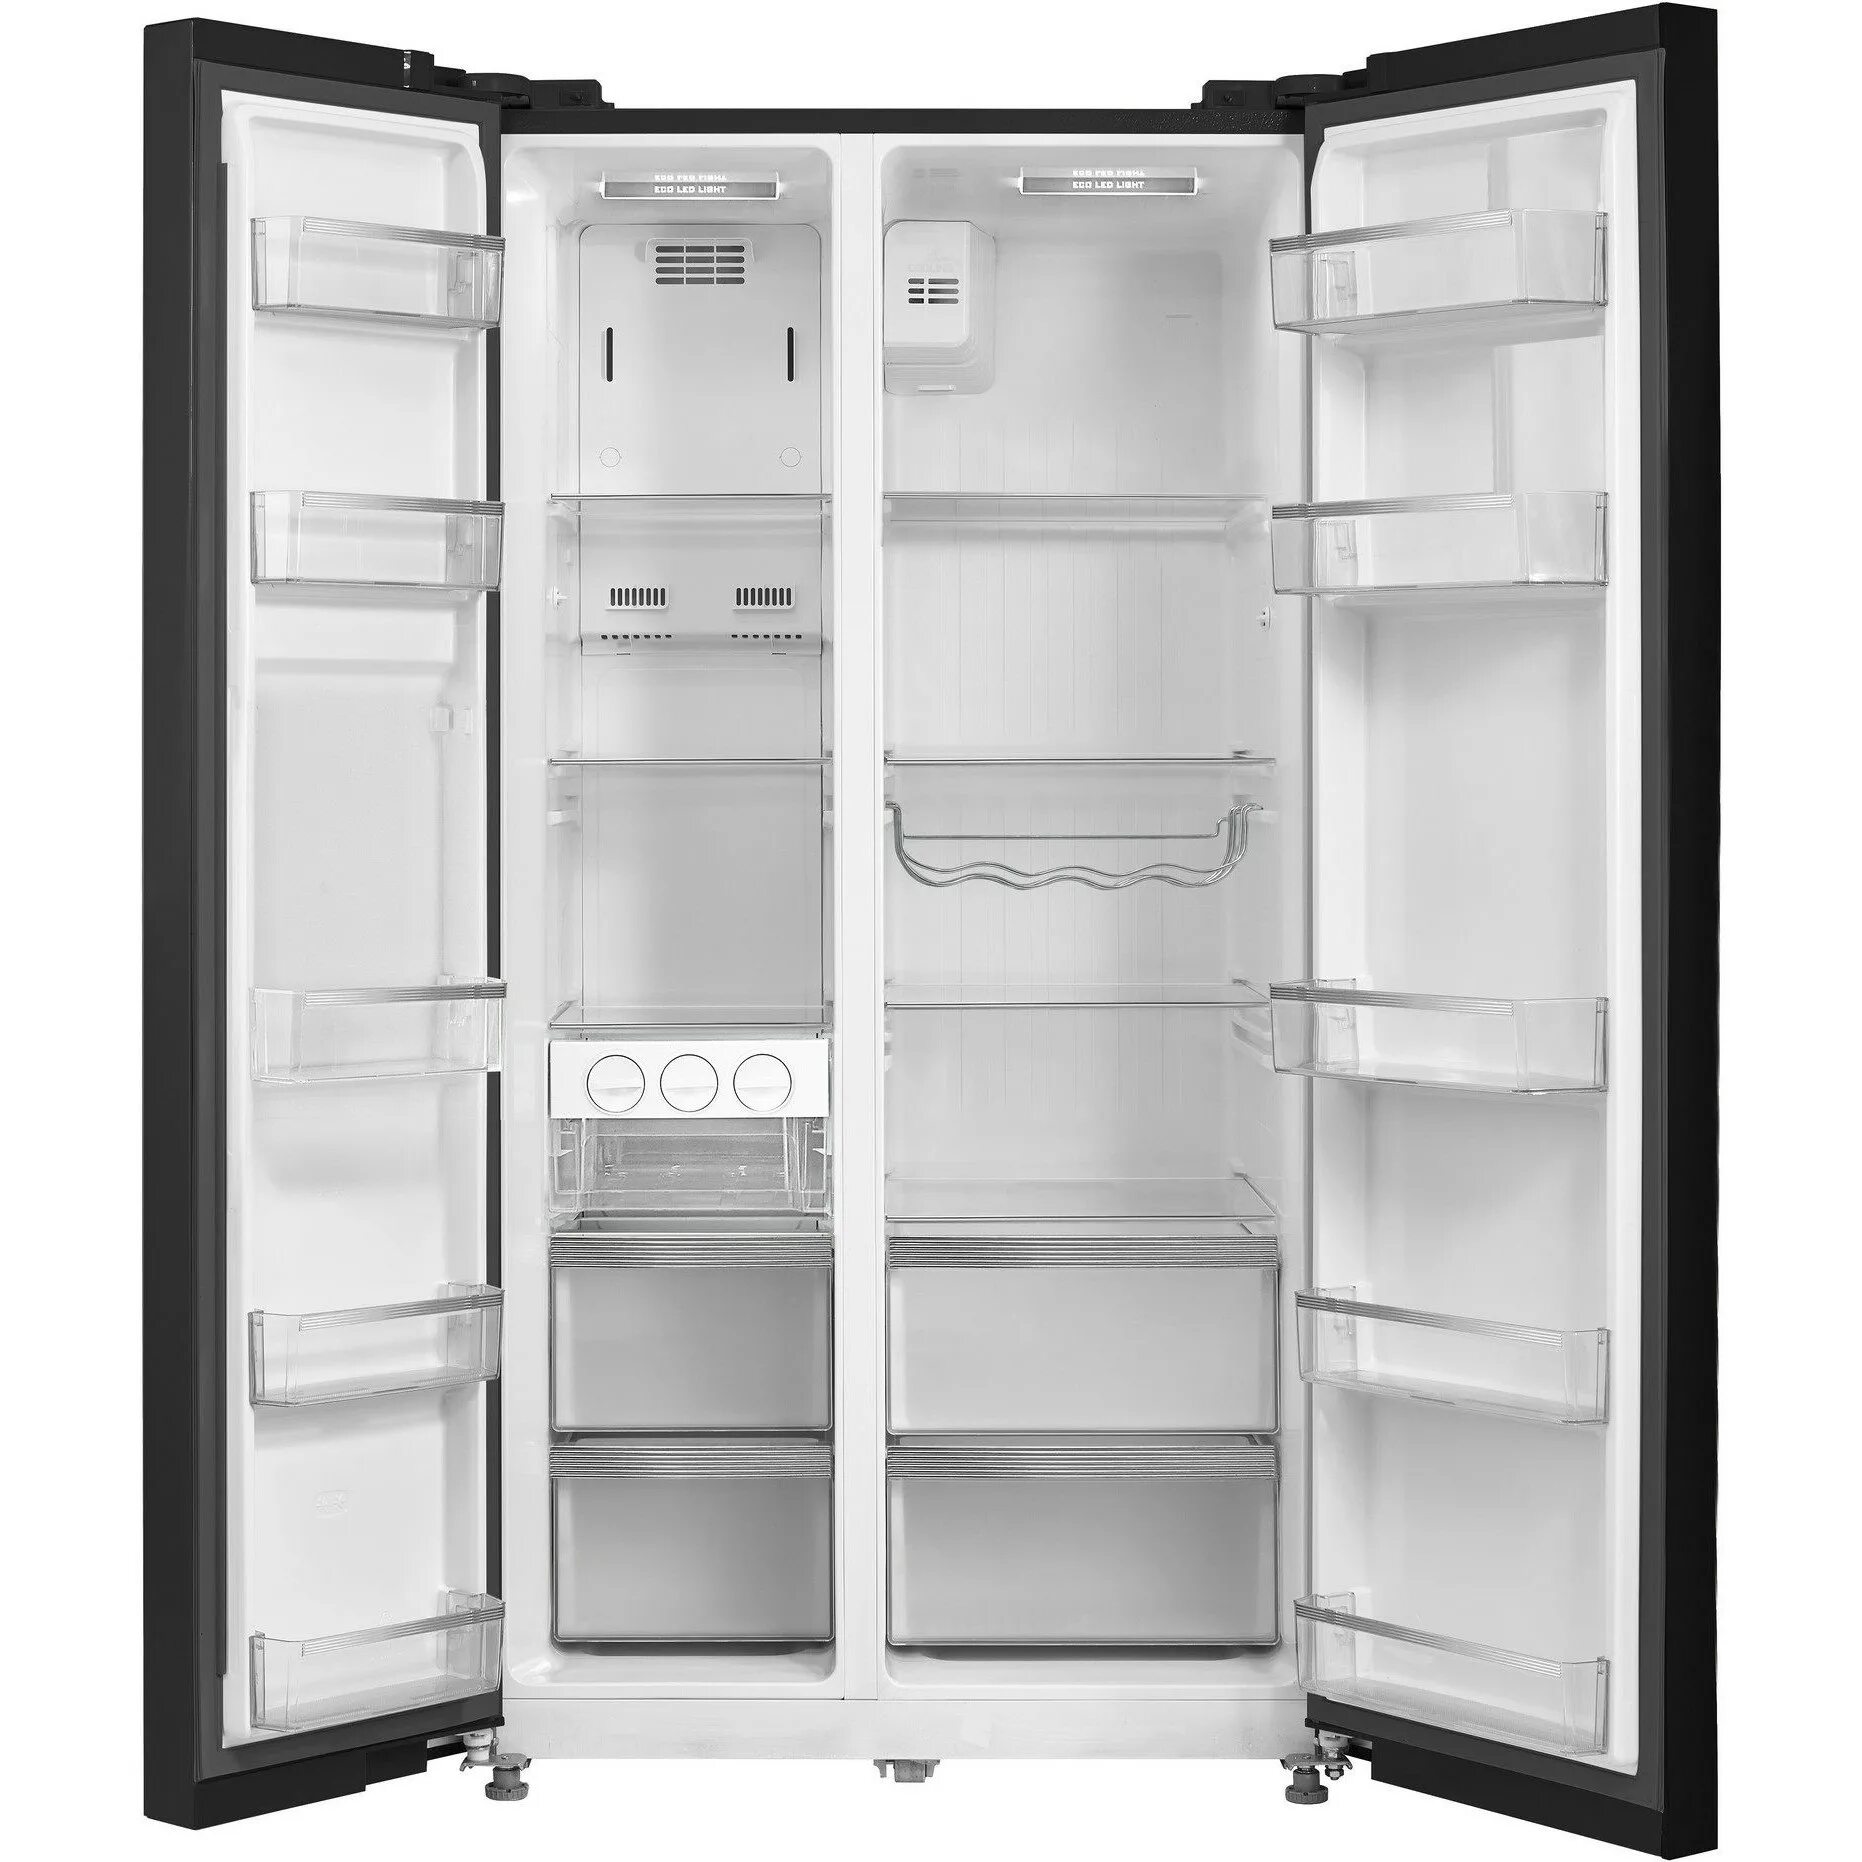 Холодильник DEXP RF-mn520dma/bi. Холодильник DEXP sbs510m. Холодильник DEXP Side by Side. Холодильник дексп в ДНС черный. Dexp side by side